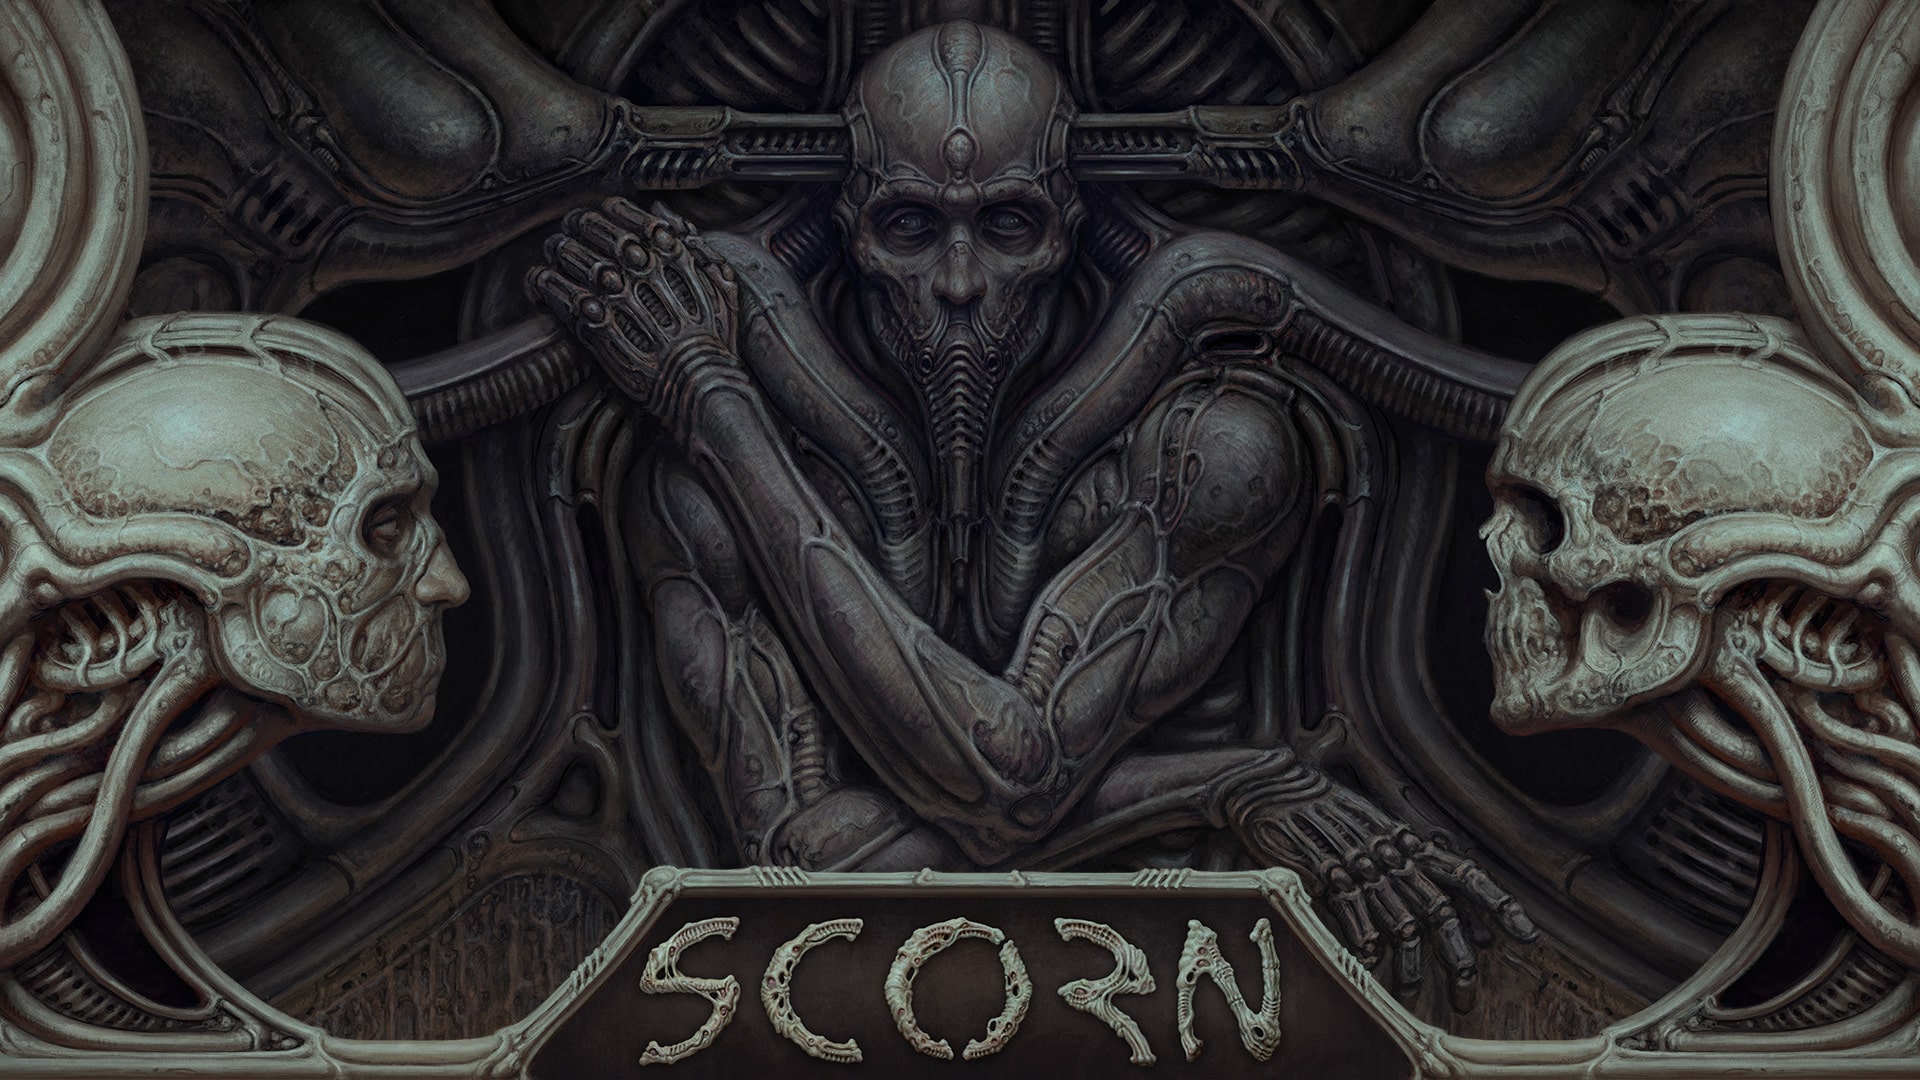 Scorn gameplay video new